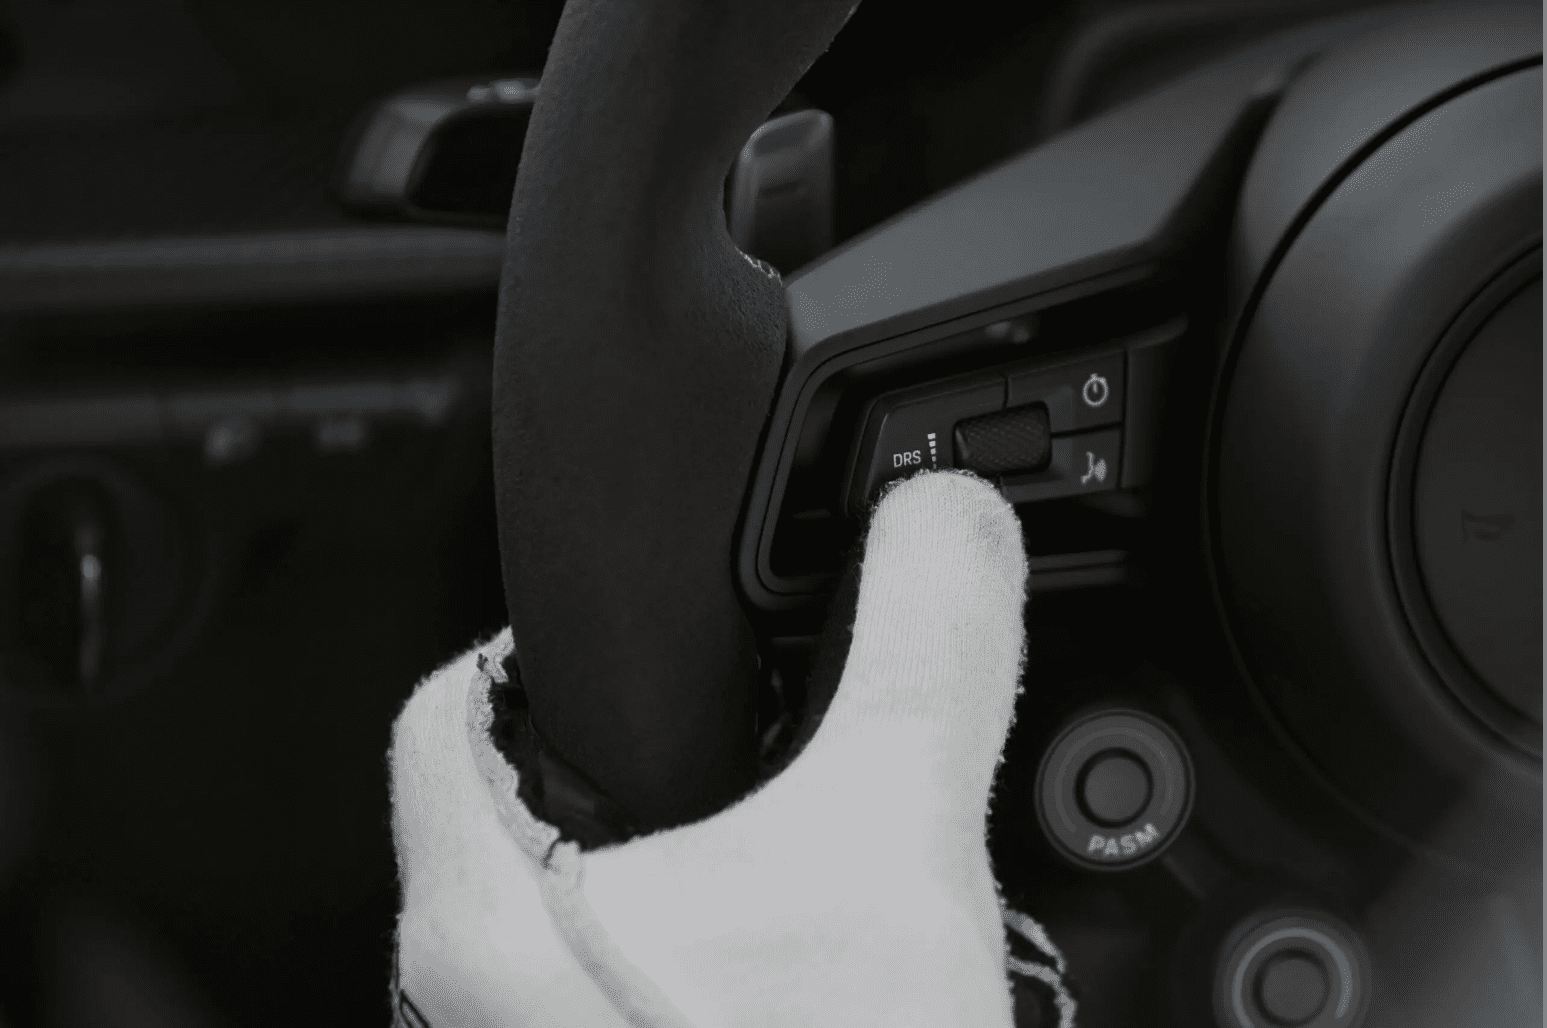 Porsche 992 GT3RS steering wheel